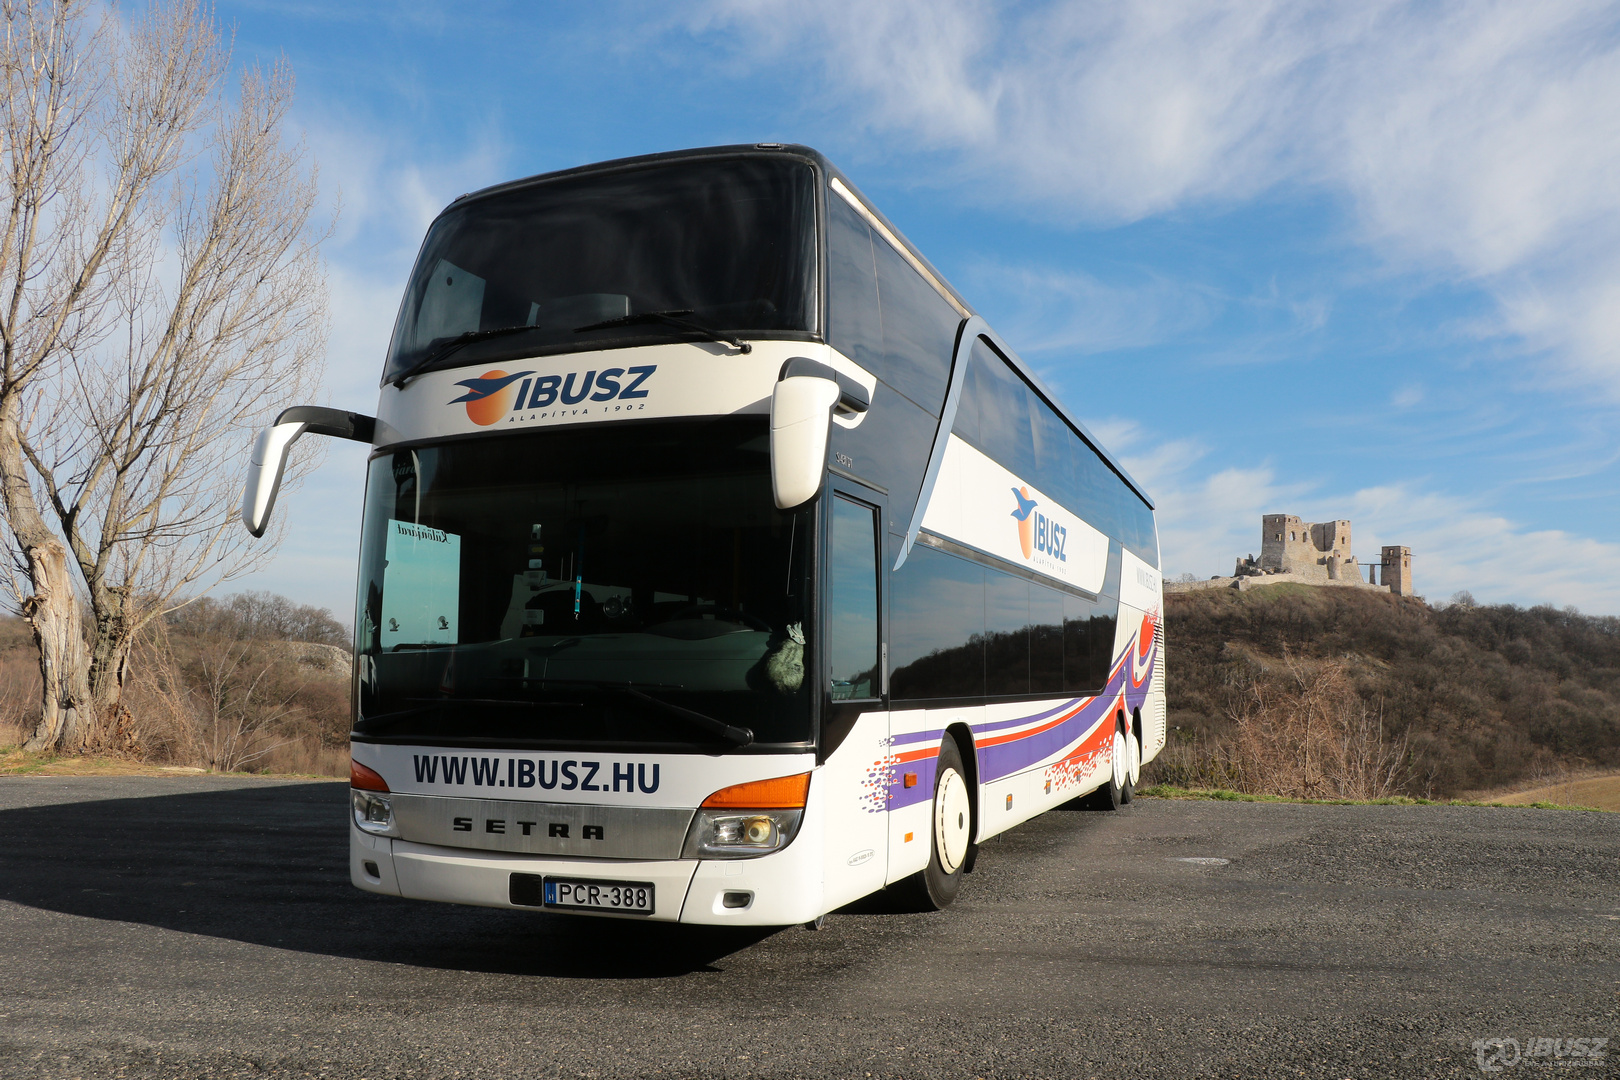 Az IBUSZ által szervezett Halkidiki expressz 2023 buszjárat járművei rendszeresen karbantartott, biztonságos modellek, melyek kényelmes utazást biztosítanak.